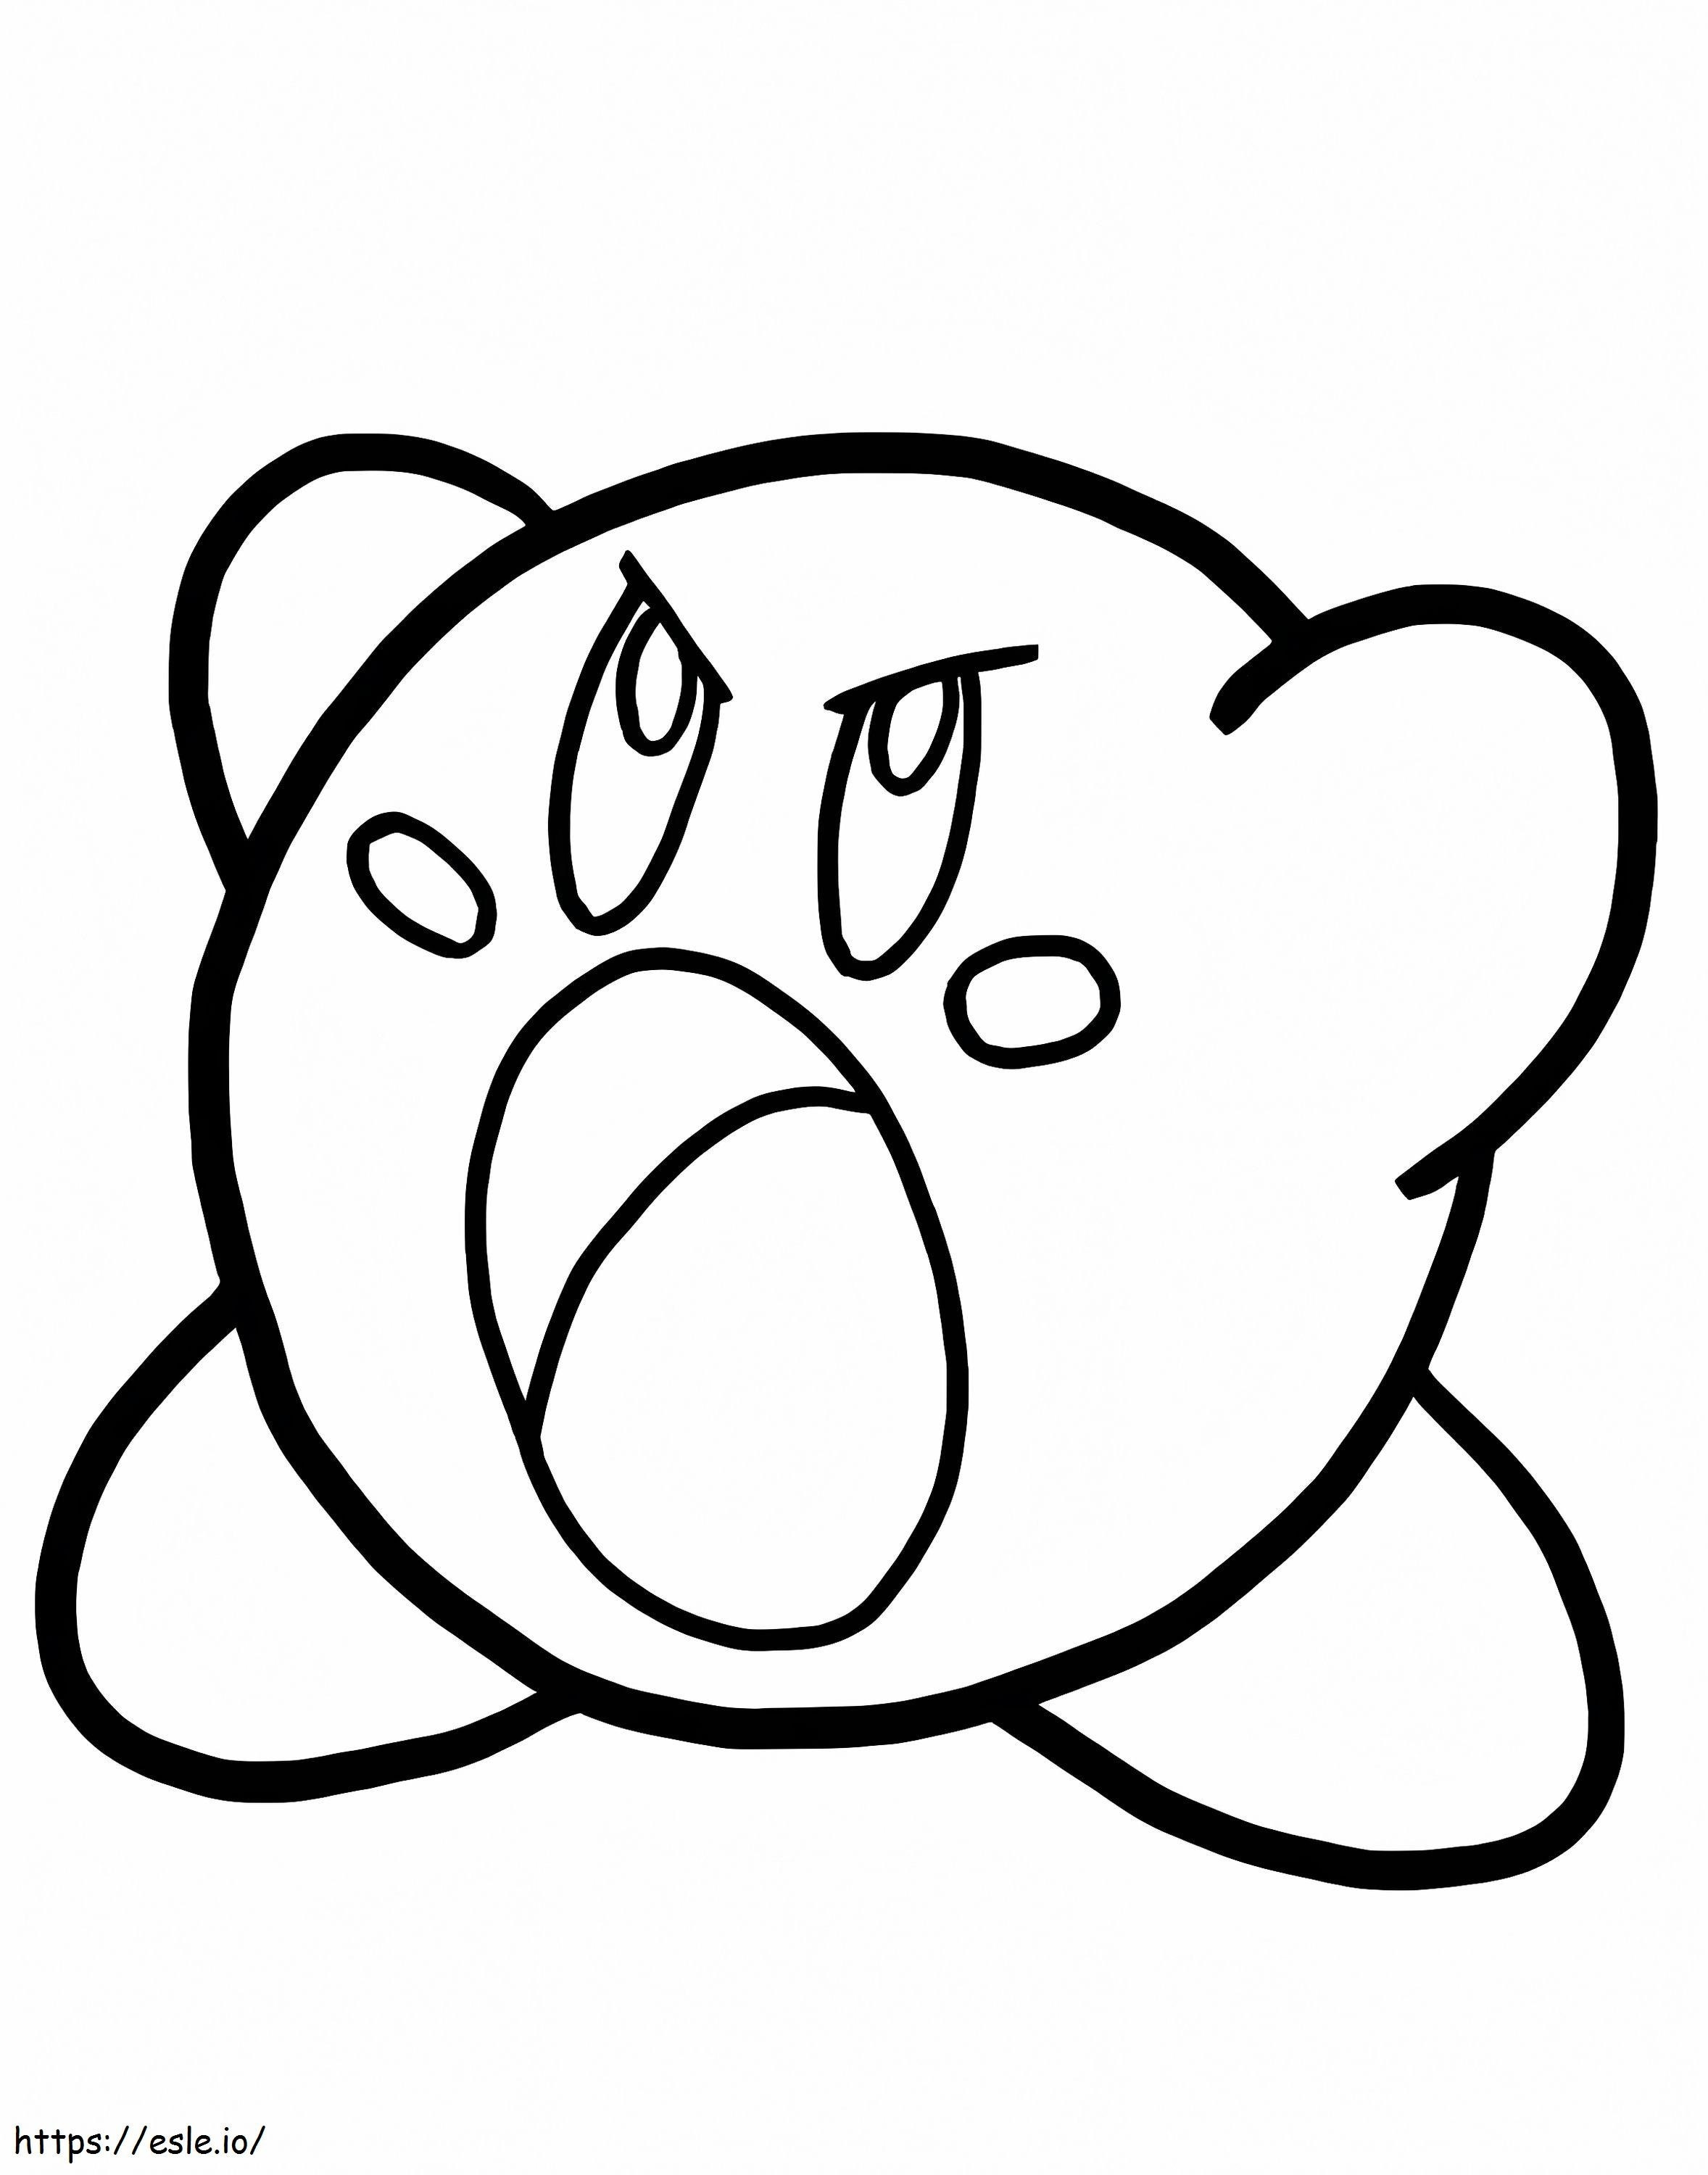 Kirby arrabbiato da colorare